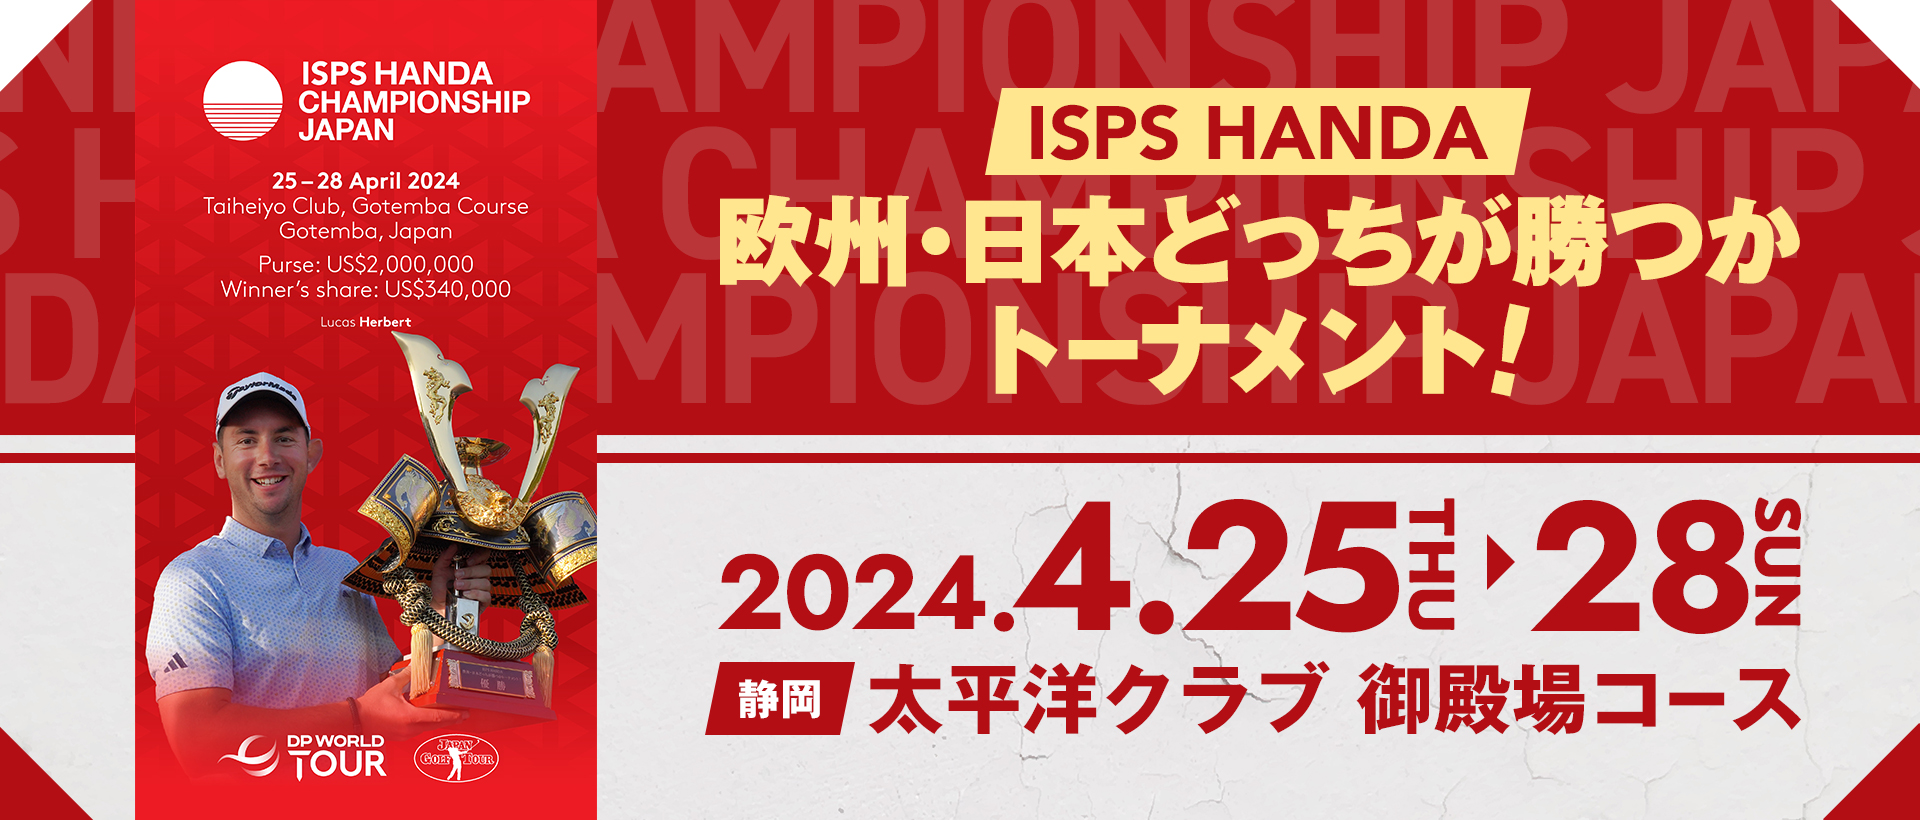 ISPS HANDA 欧州・日本どっちが勝つかトーナメント!